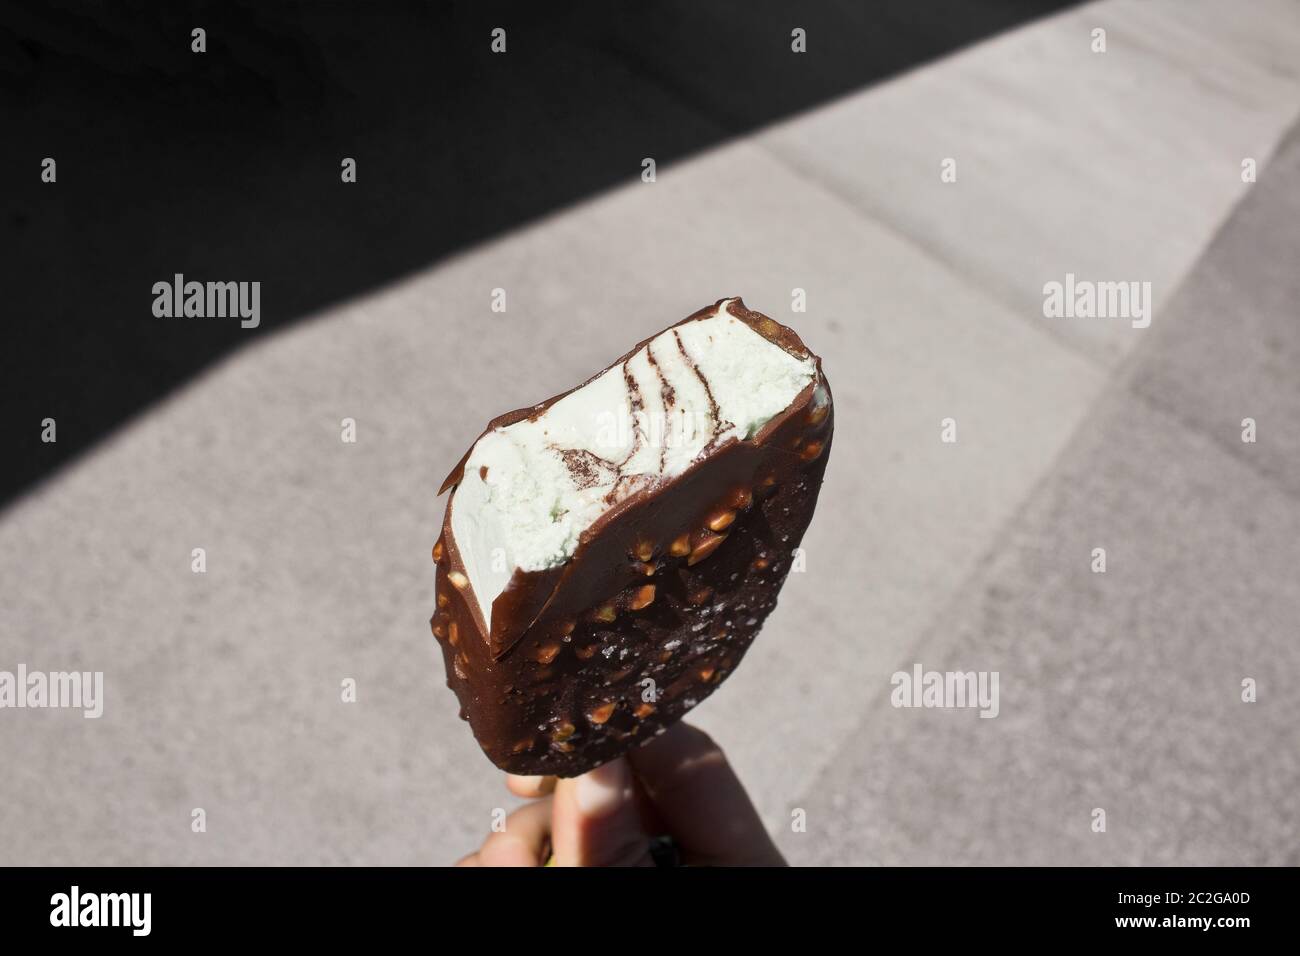 Eis mit Vanille, Schokolade und Nüsse/Mandeln Stockfoto